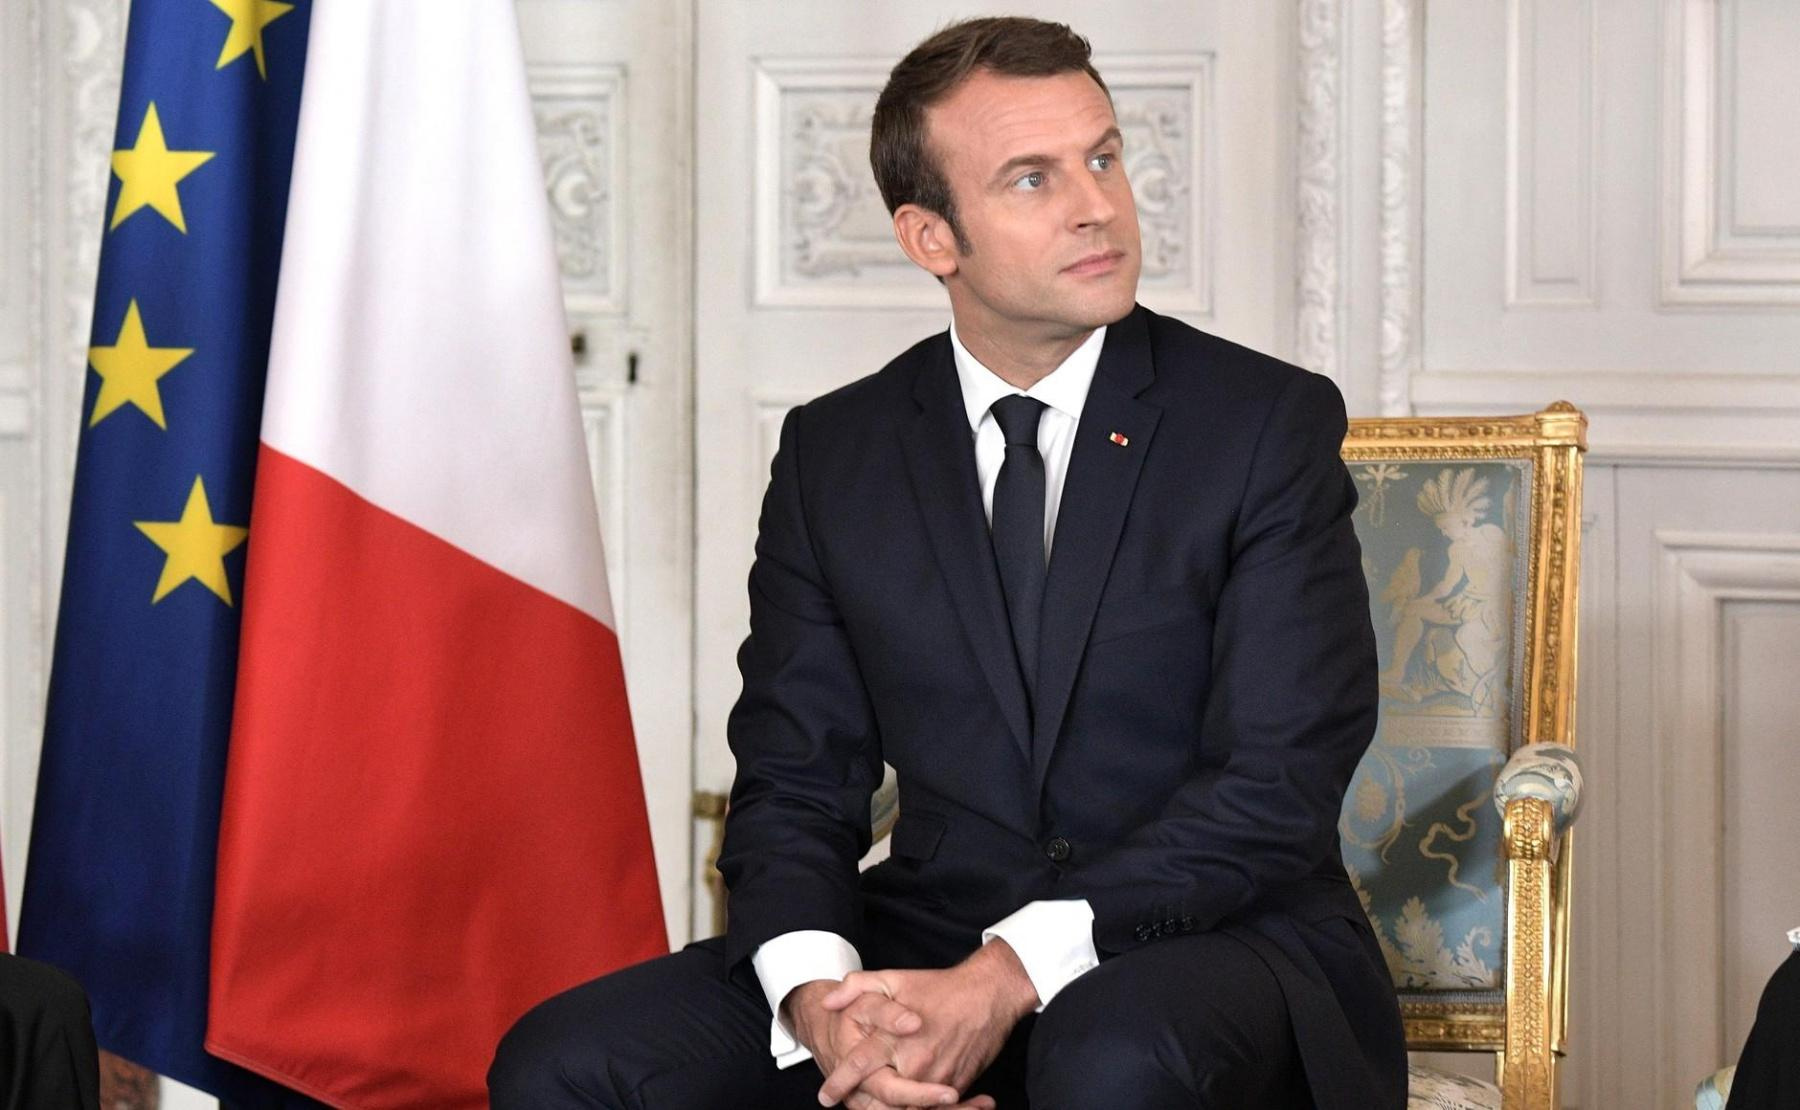 Le Mali: Le président Macron qualifie de « honte » les propos du Premier ministre malien sur un « abandon » par la France